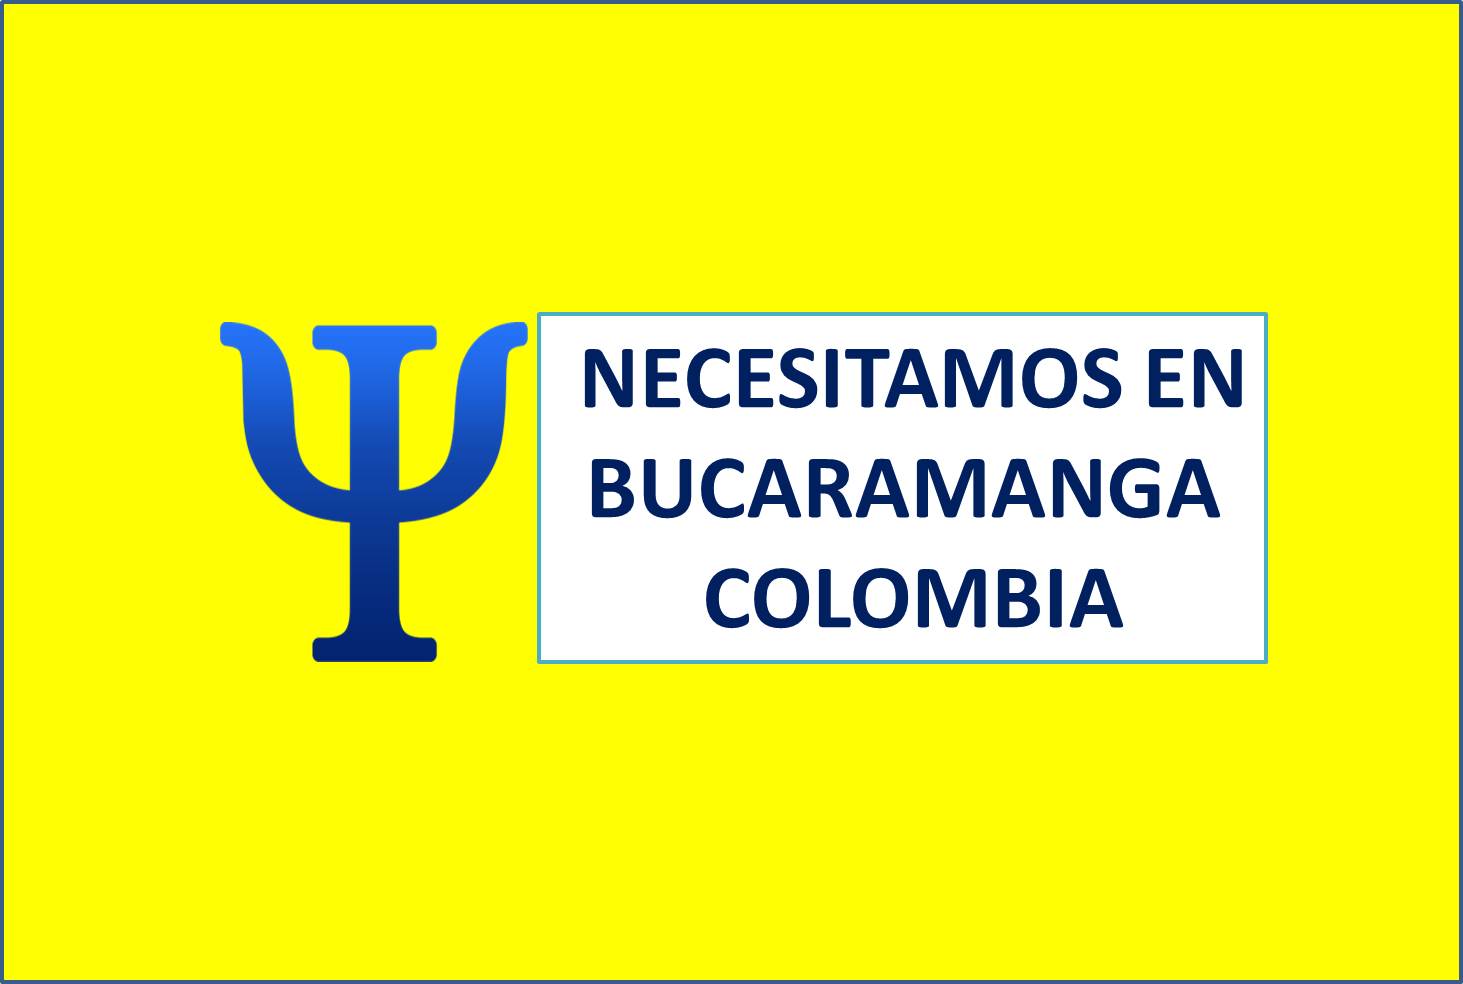 PSICOLOGAS EN BUCARAMANGA COLOMBIA NECESITAMOS